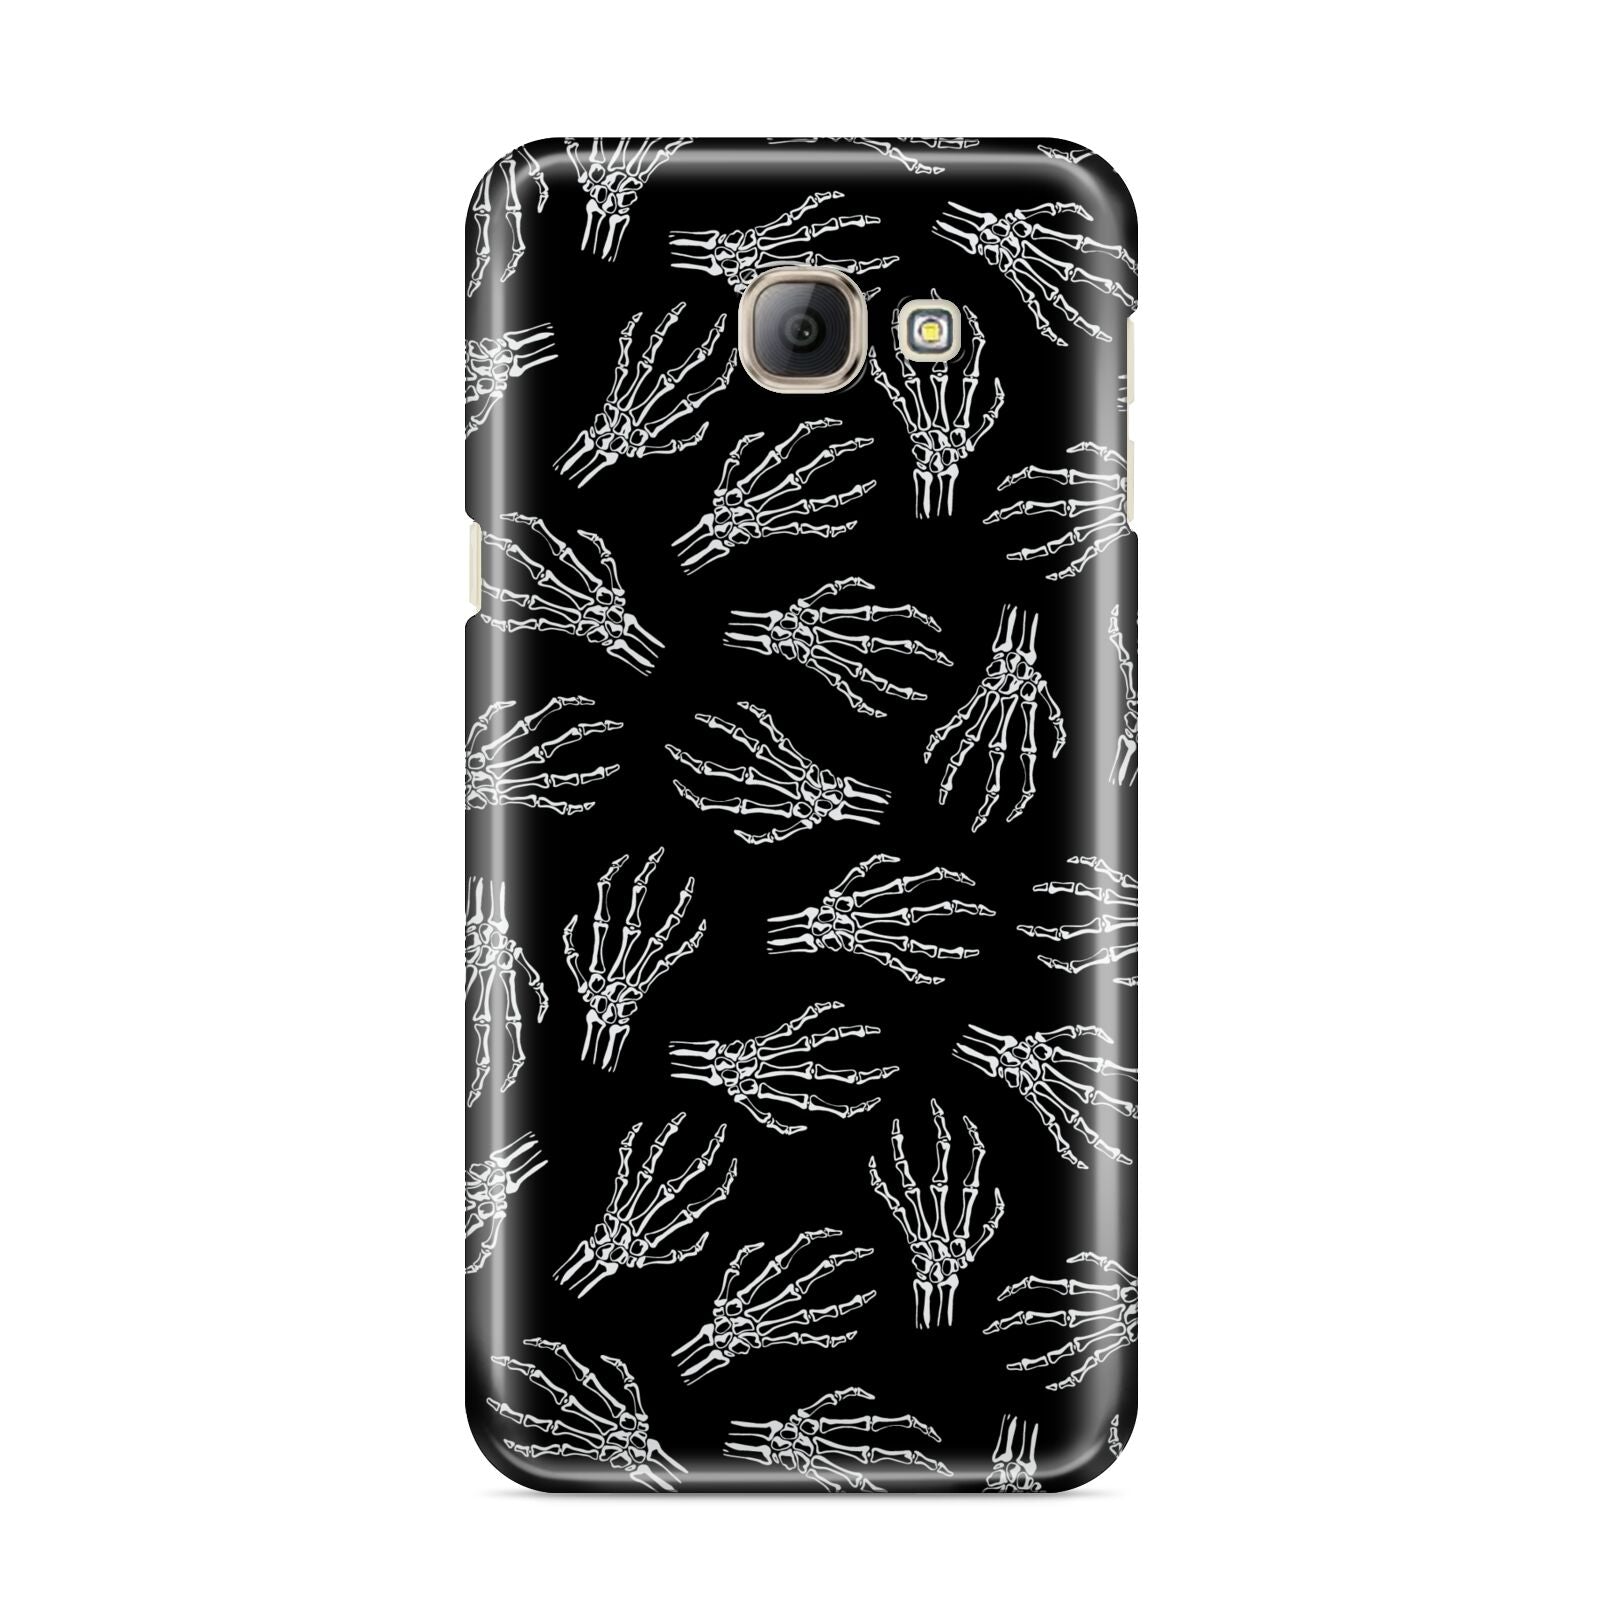 Skeleton Hands Samsung Galaxy A8 2016 Case